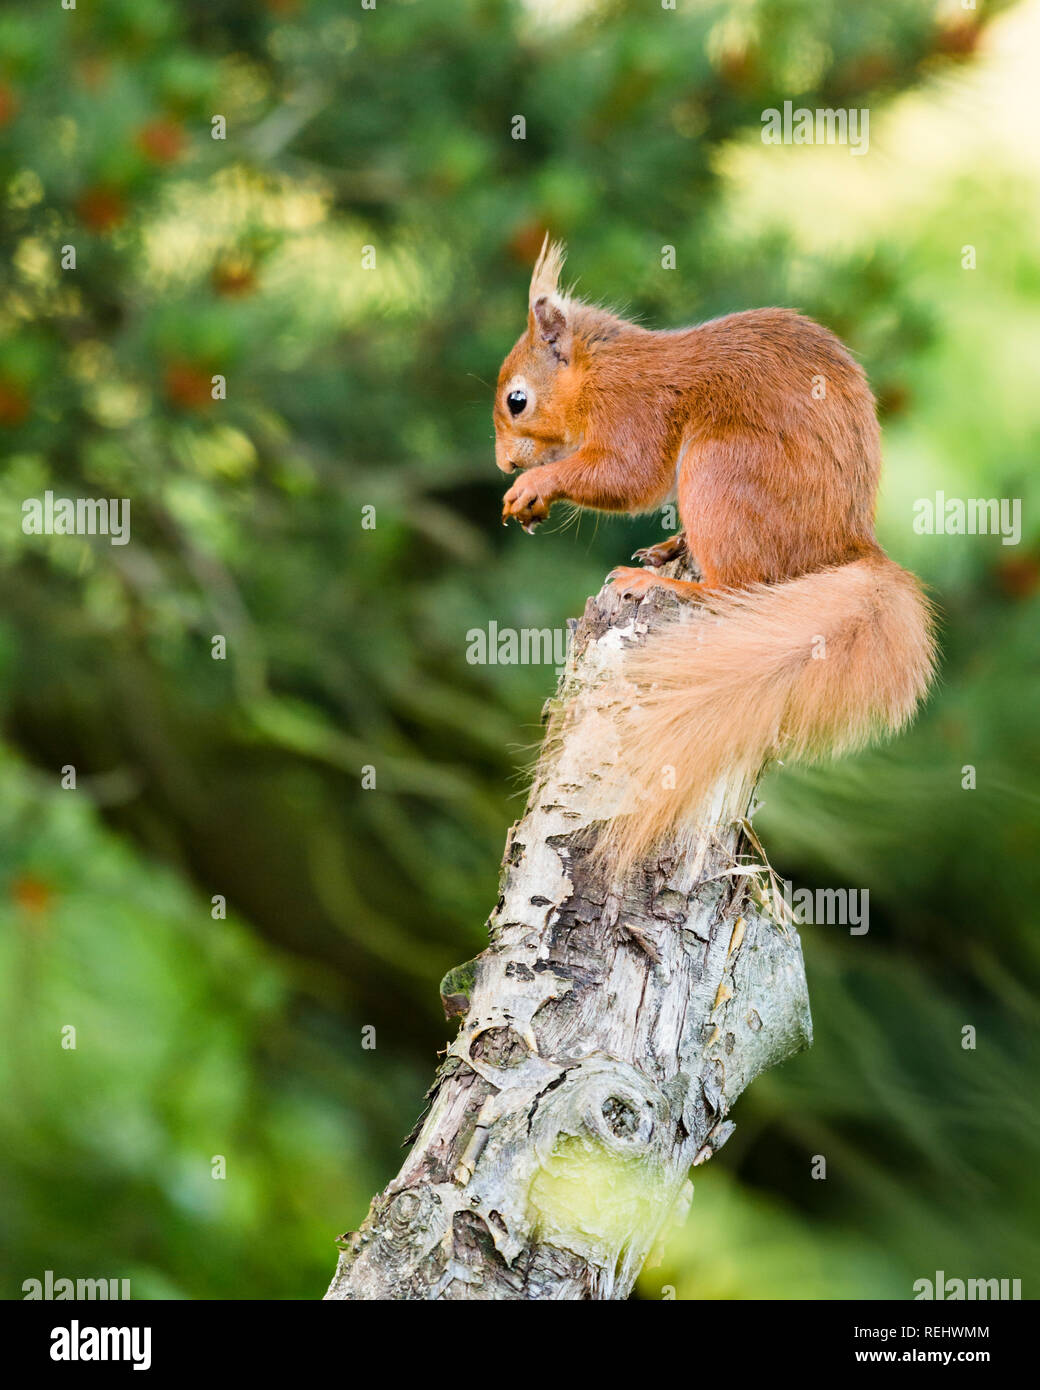 Ein rotes Eichhörnchen sitzt auf einem alten Baum füttern und wickeln Ihren Schwanz um seiner selbst für Balance stumpf. Stockfoto